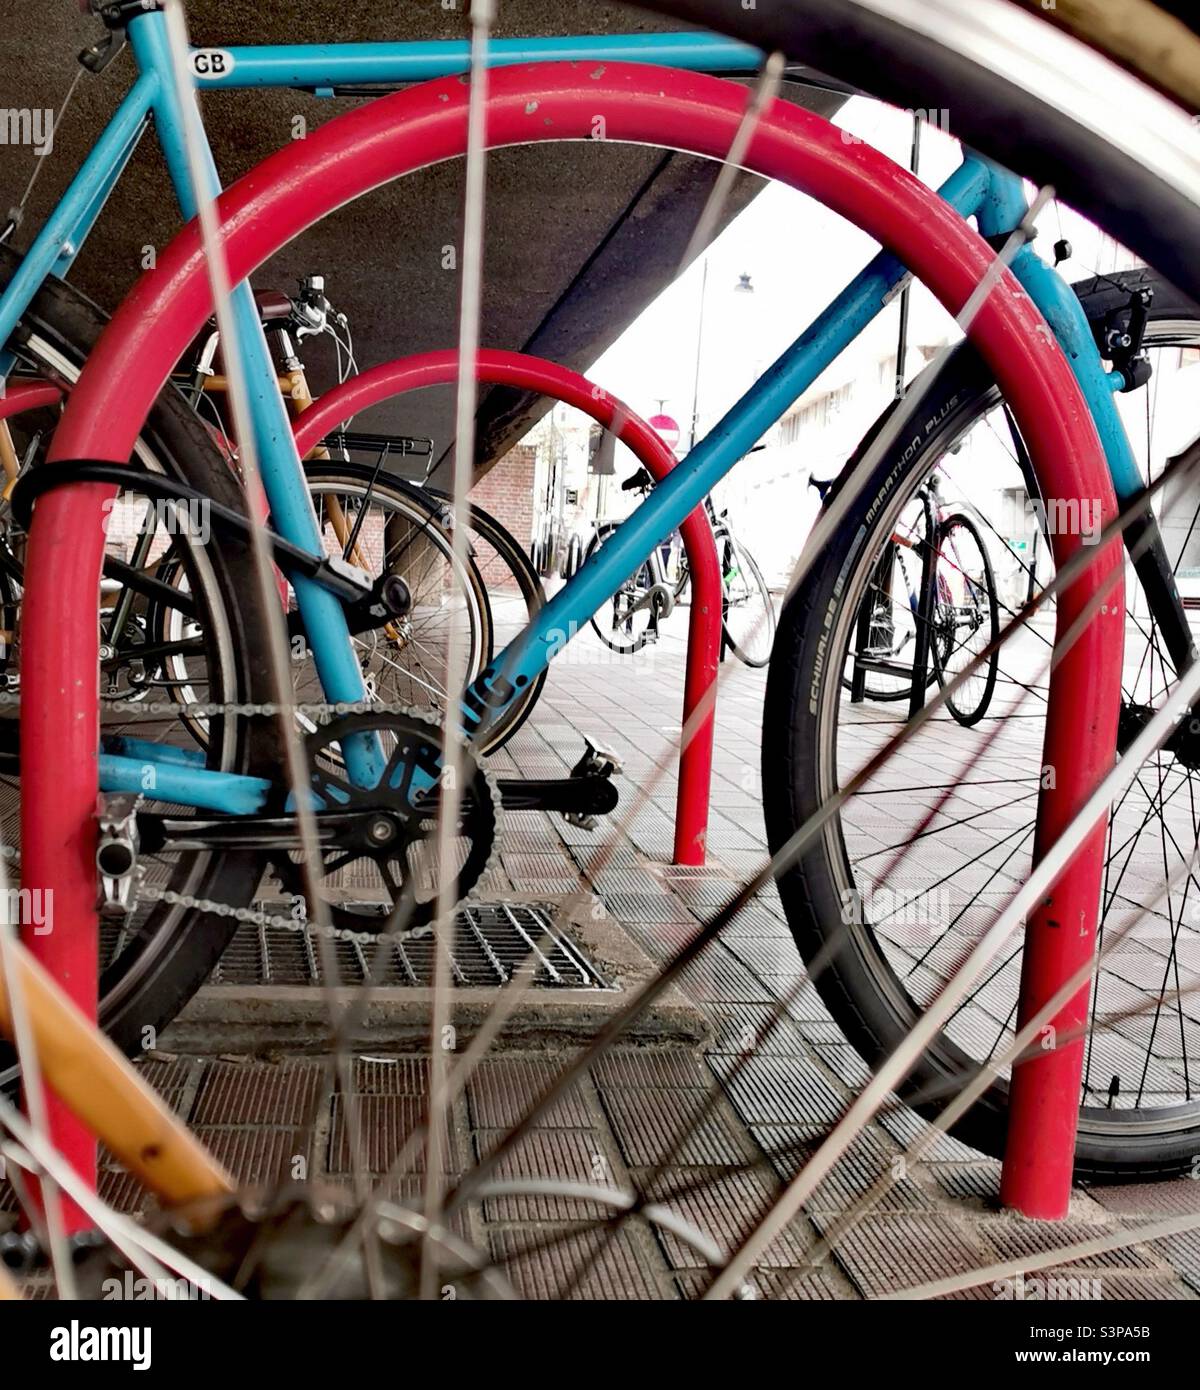 vélo bleu verrouillé sur le support de vélo orange Banque D'Images